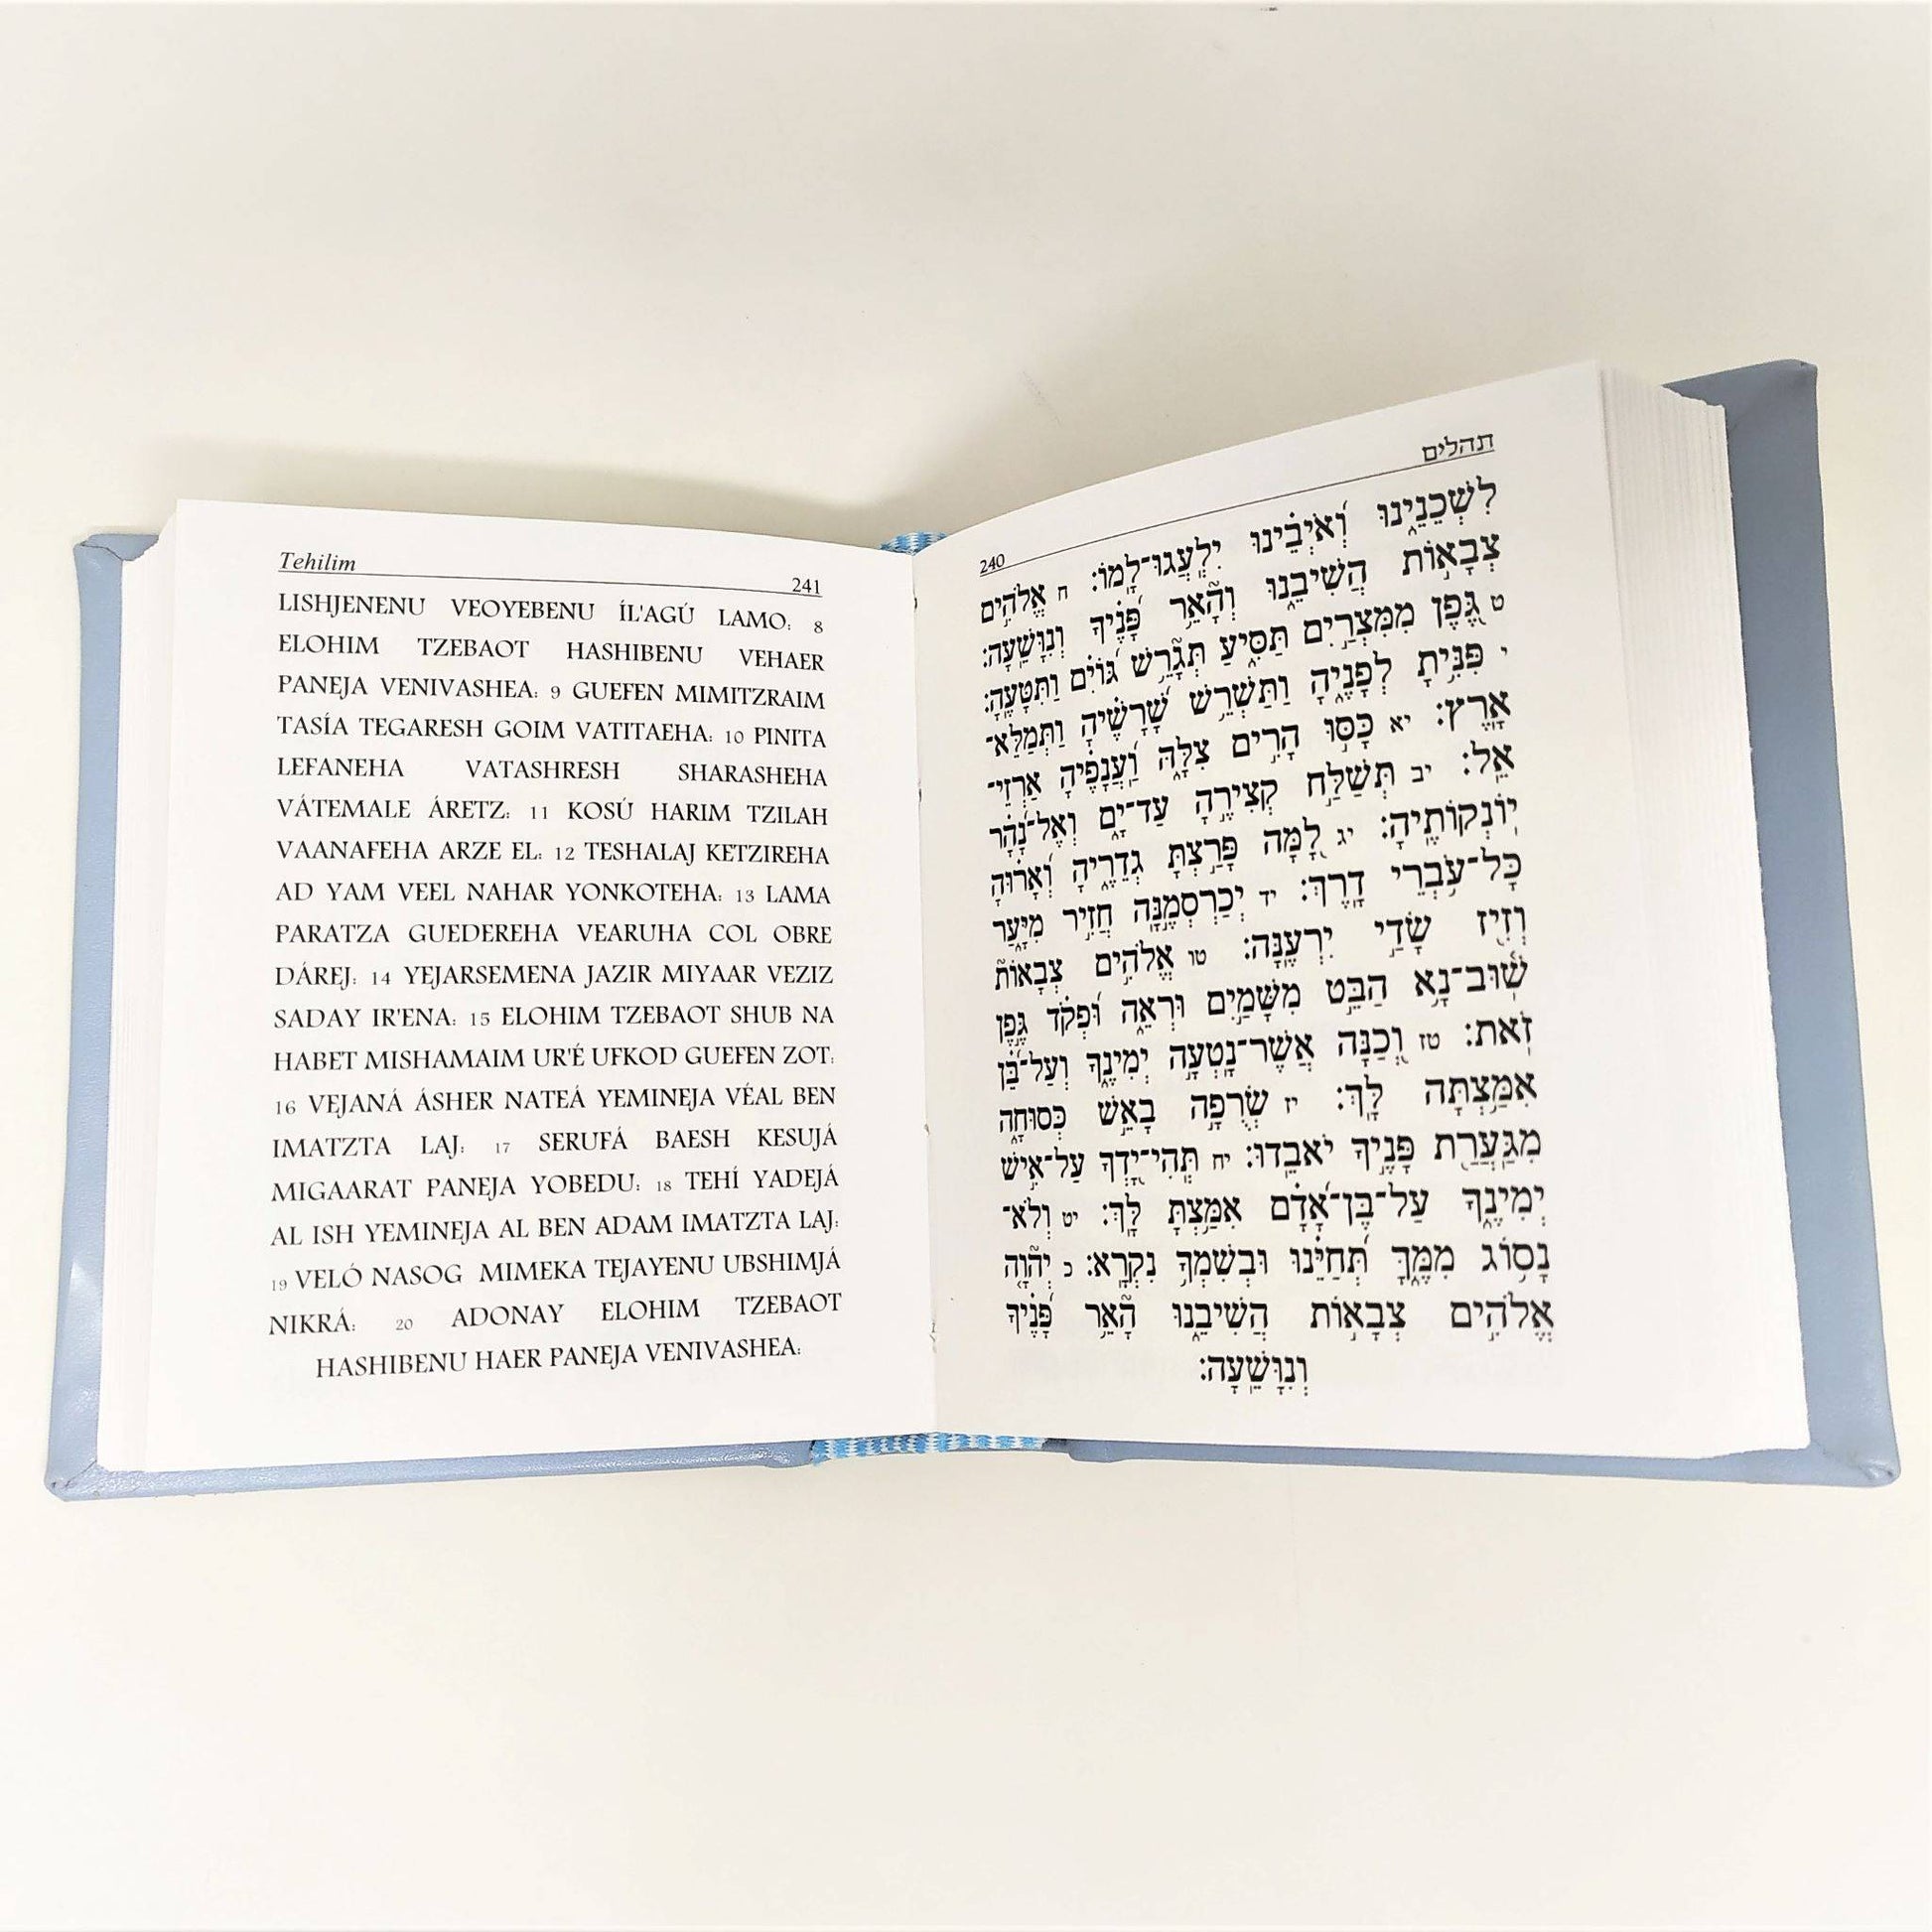 Salmos Tehilim Rosa Noam Bolsillo hebreo-fonética - Libreria Jerusalem Centro